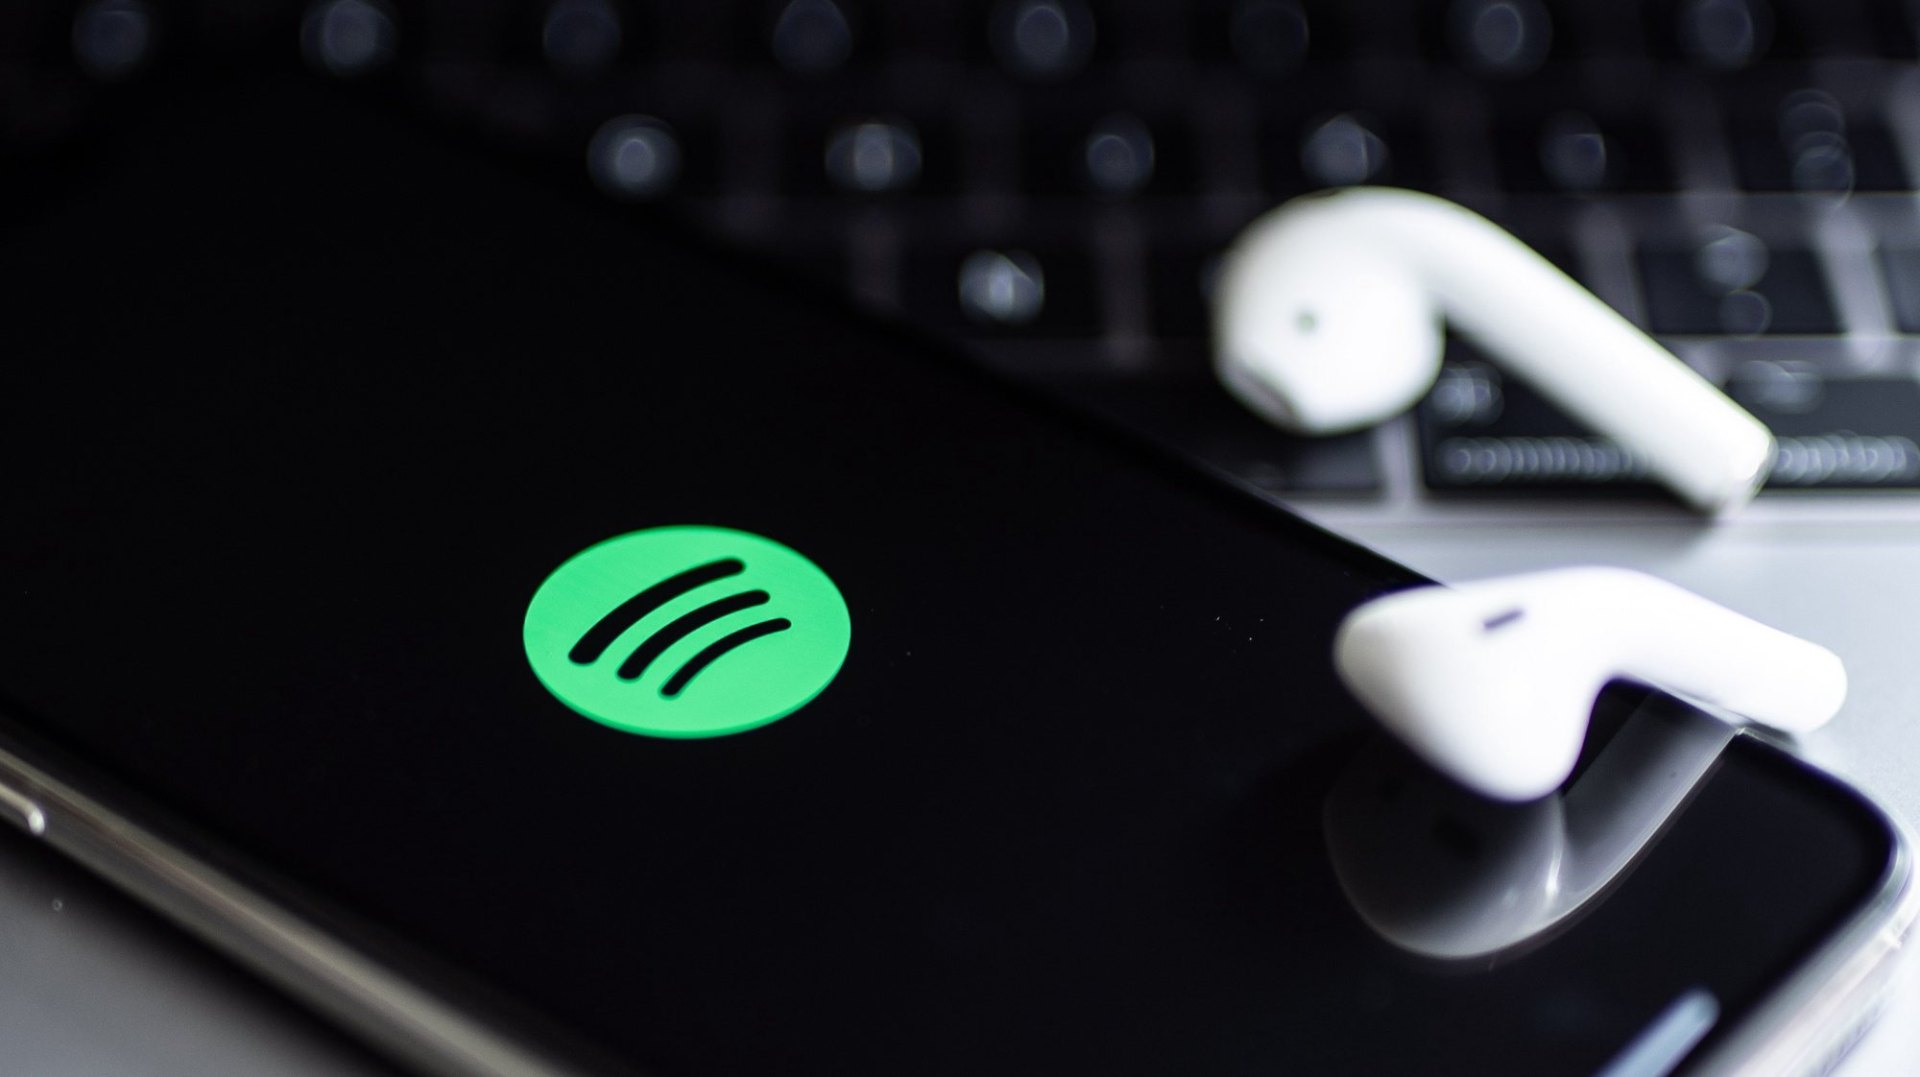 Desbloqueie o Spotify – Saiba como usar de graça e offline